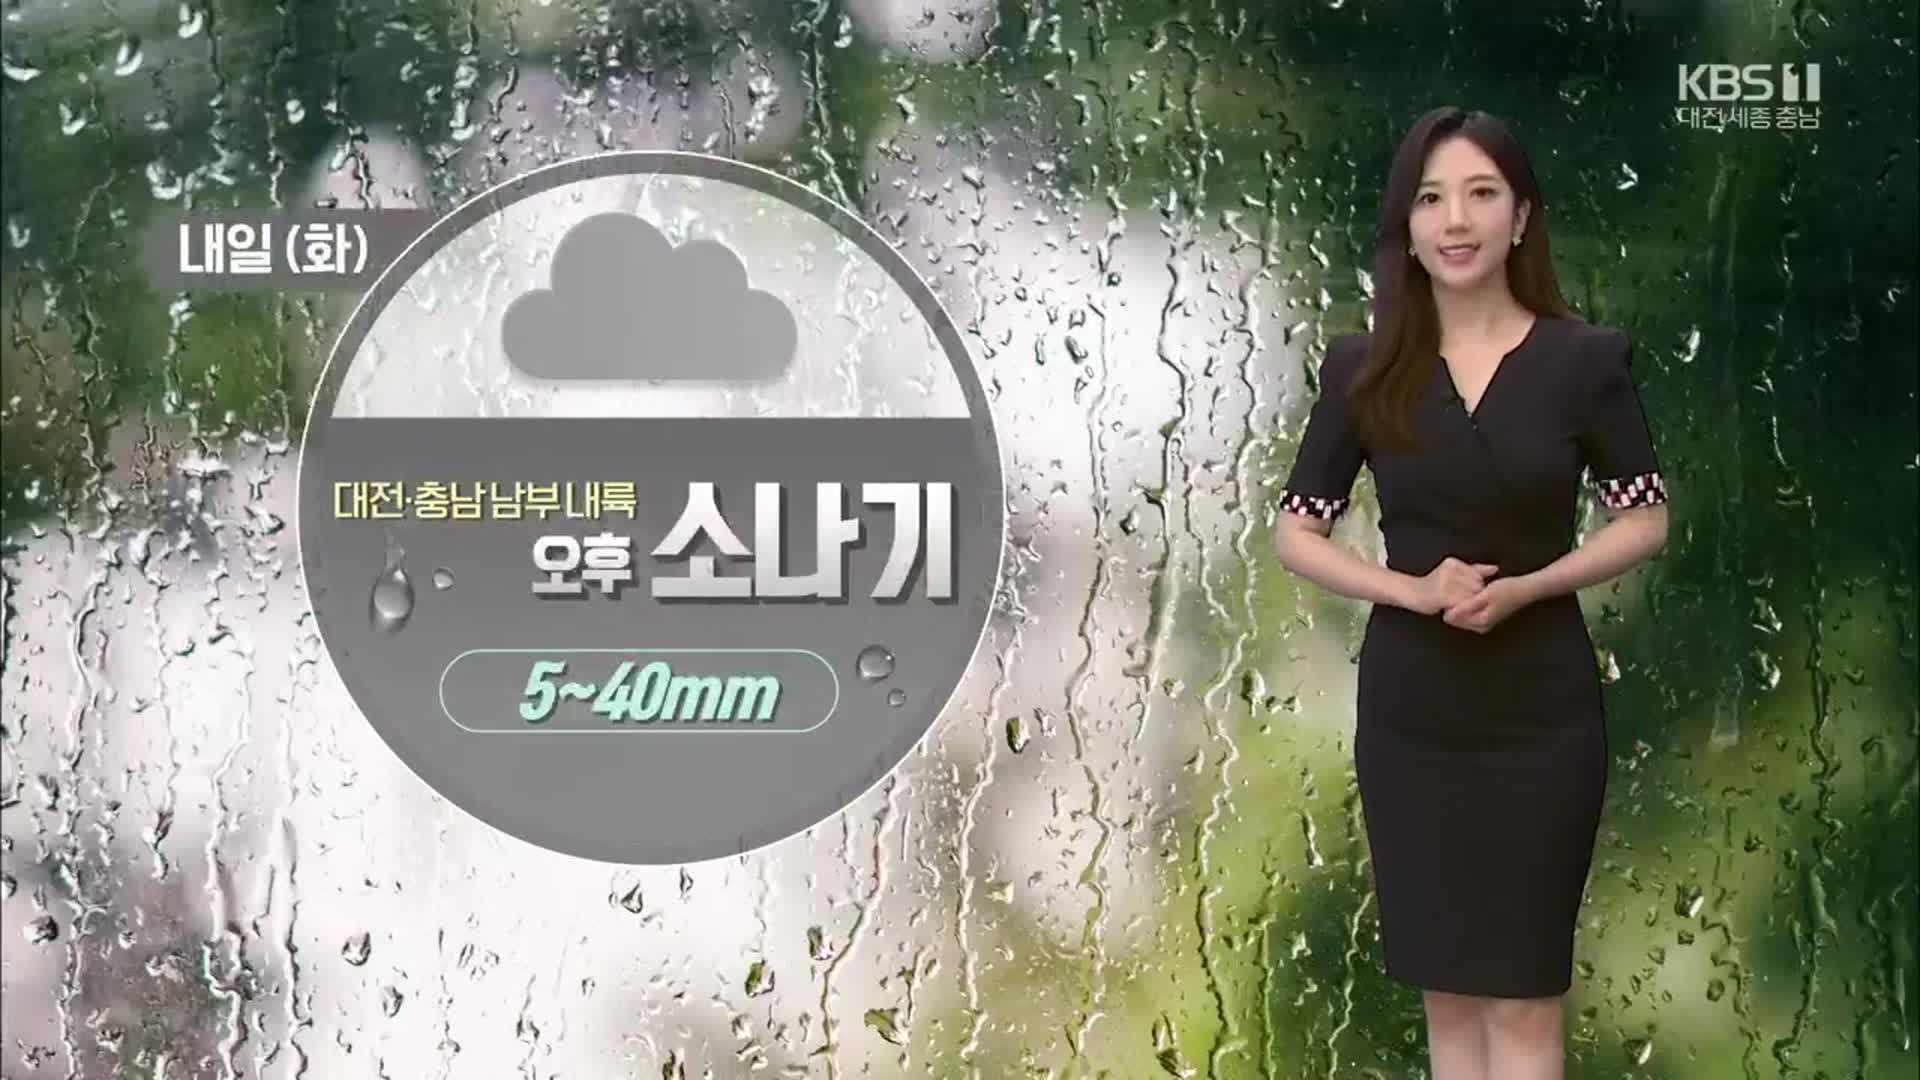 [날씨] 내일 오후 대전·충남 남부 내륙 ‘소나기’…예상 강수량 5~40mm